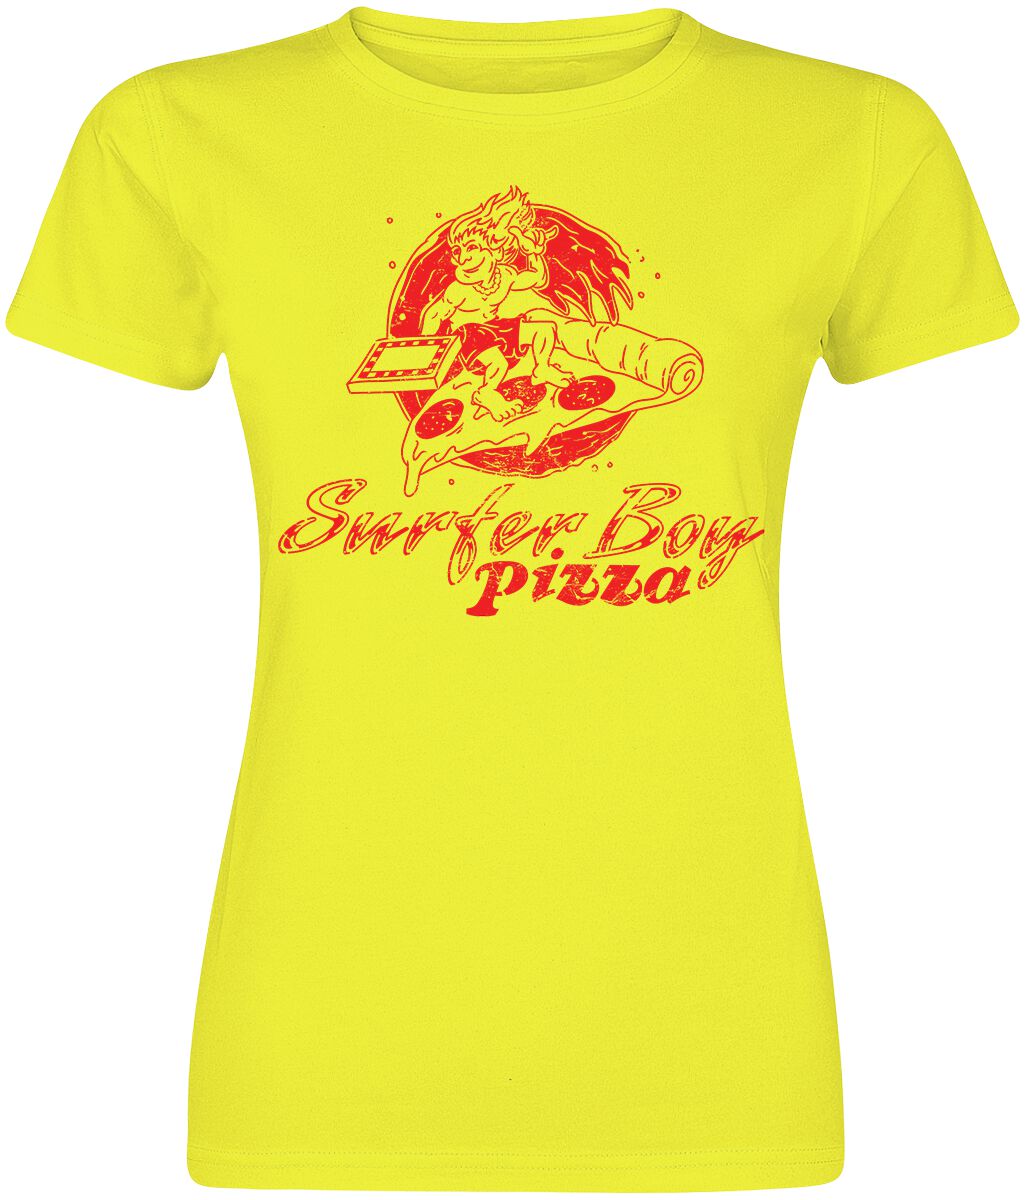 T-Shirt Manches courtes de Stranger Things - Surfer Boy Pizza - L à XXL - pour Femme - jaune